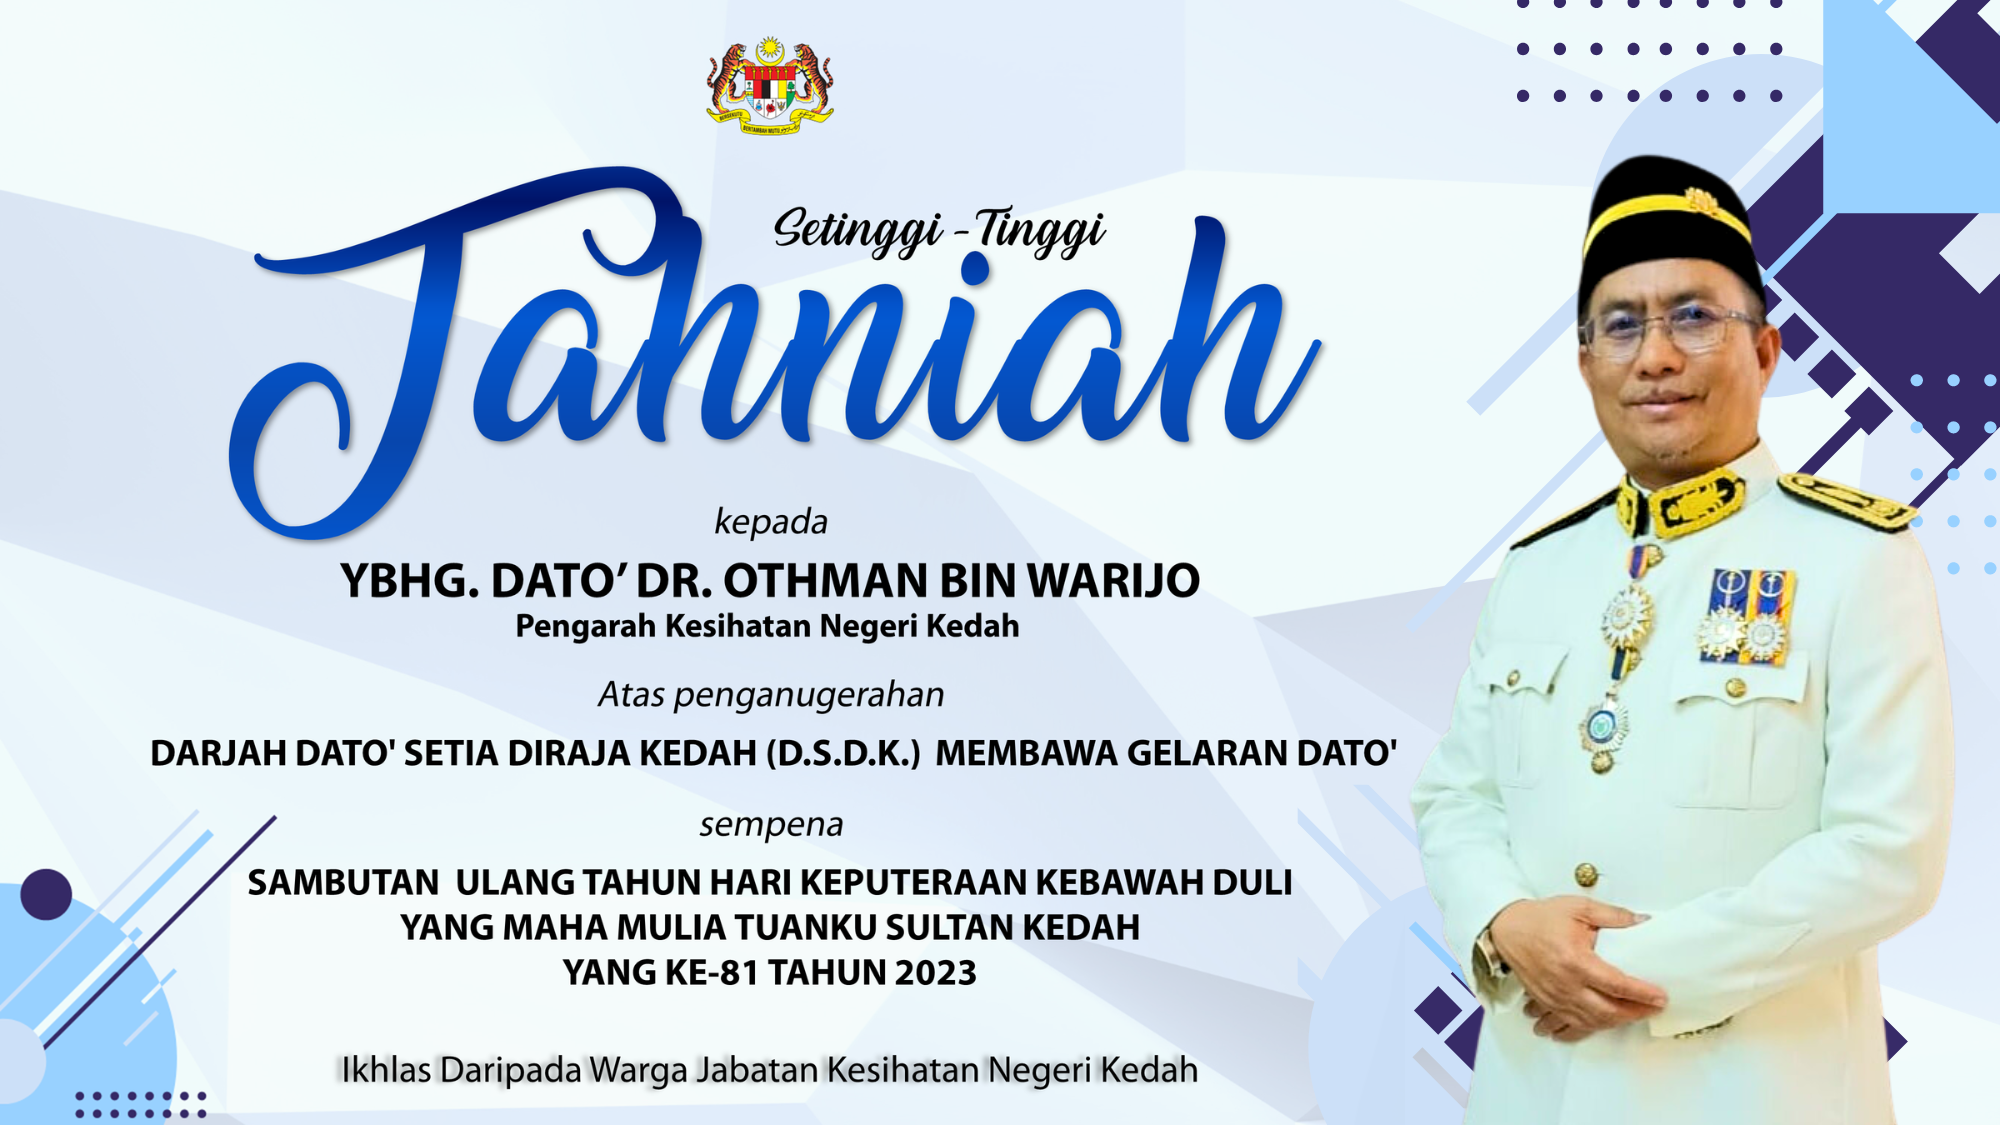 Ucapan Tahniah atas Penganugerahan Darjah Dato' Setia Diraja Kedah (D.S.D.K)